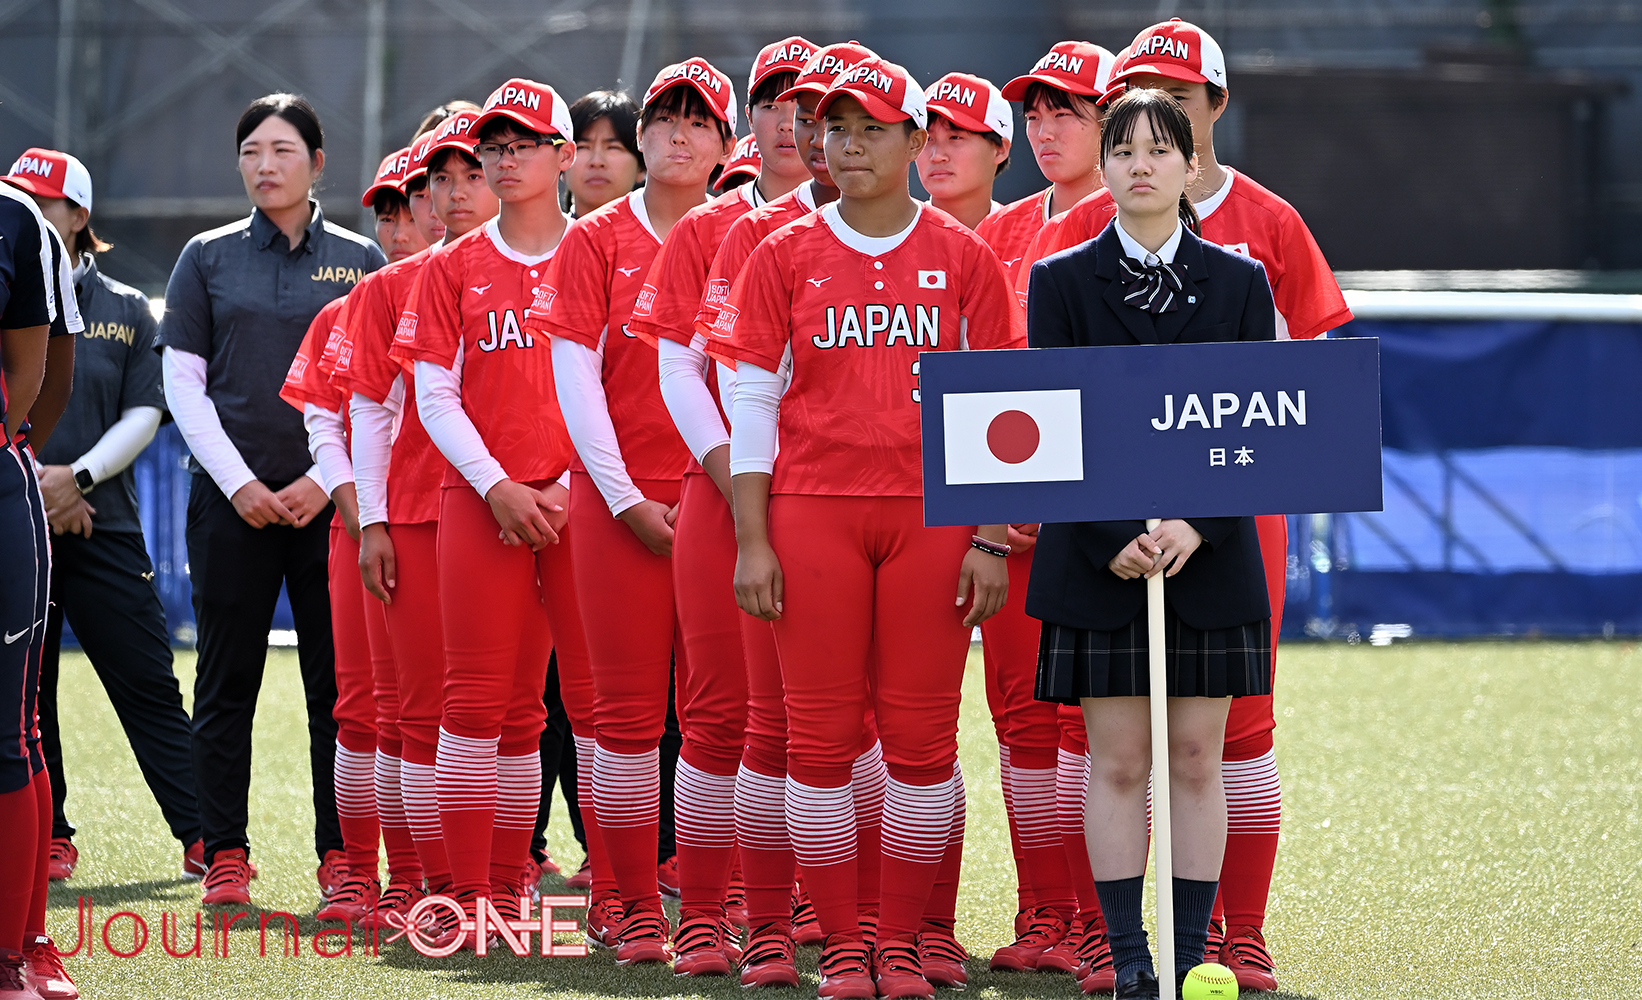 女子ソフトボールU15ワールドカップ| 開会式に整列するU15日本代表の凜々しい姿-Journal-ONE撮影